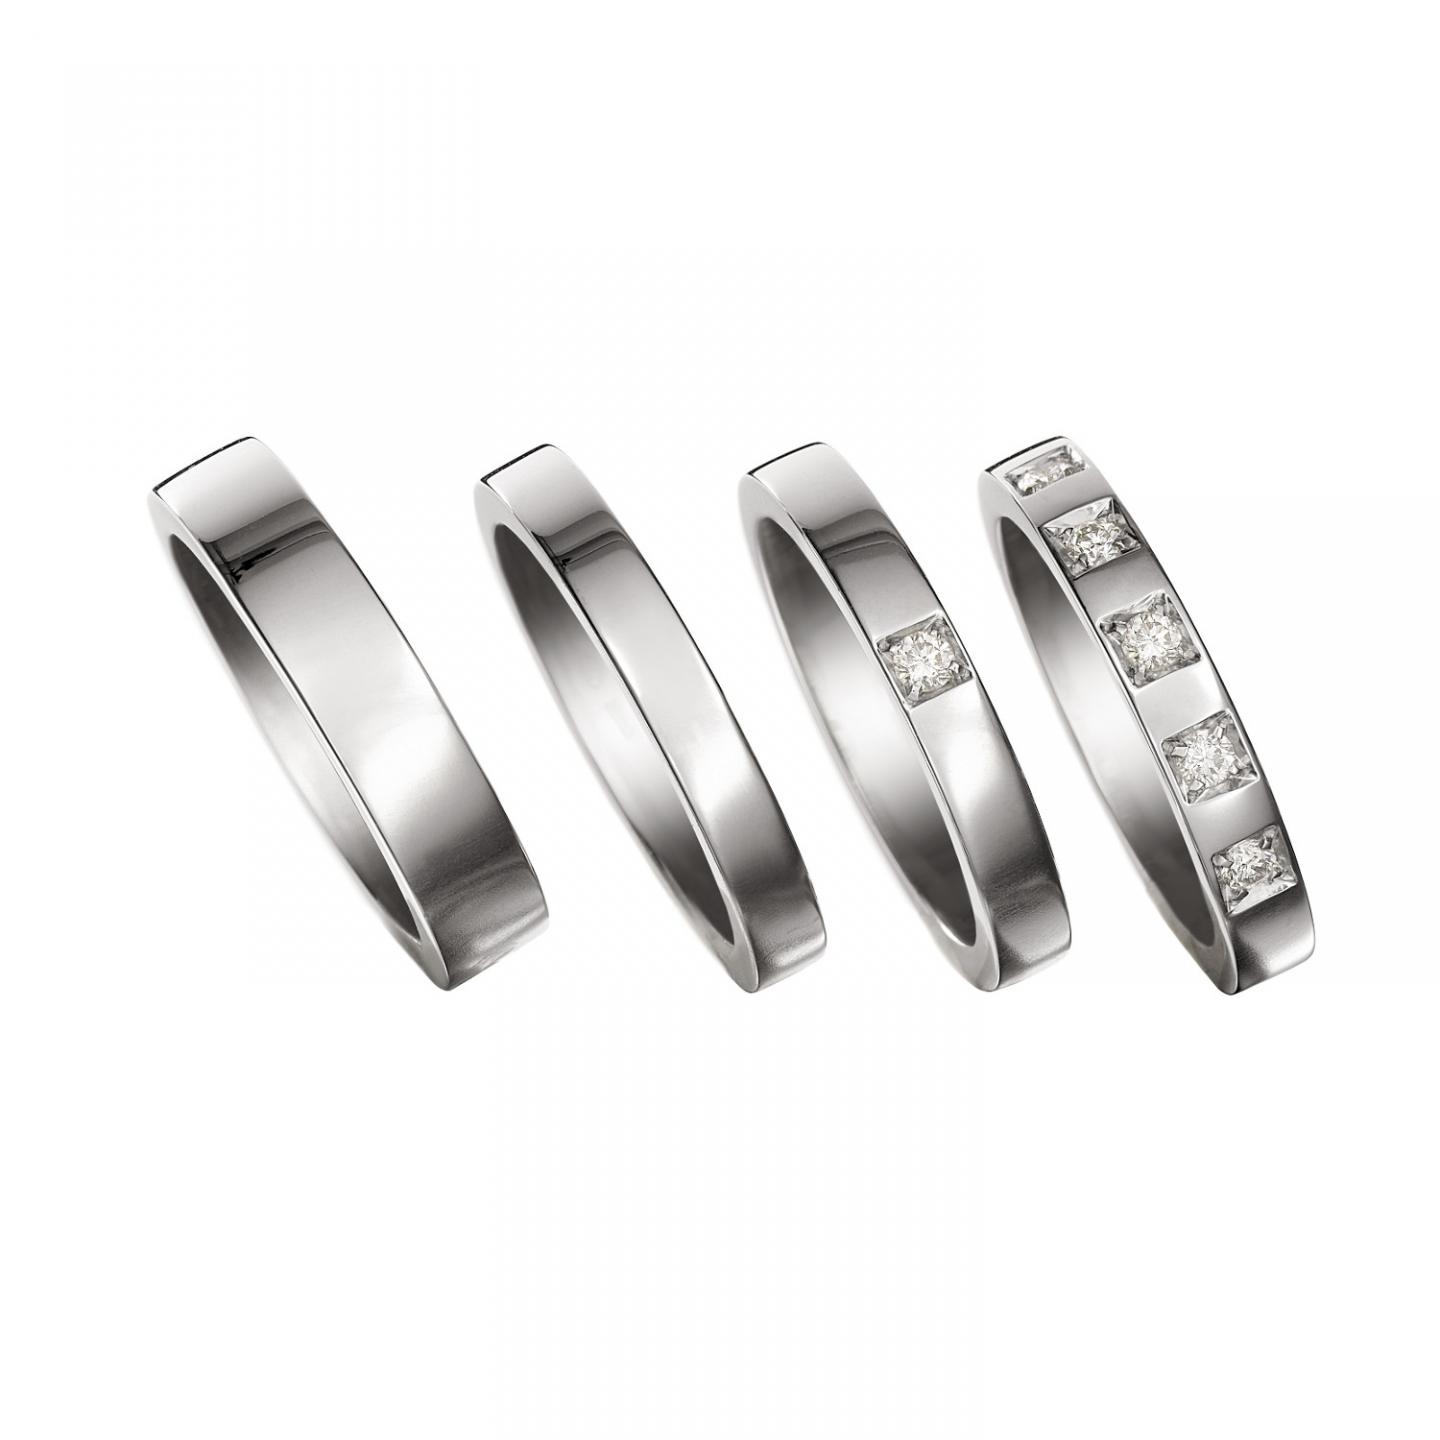 ブルガリの婚約指輪 結婚指輪を売るなら指輪買取専門店おもいおへ 銀座でダイヤ買取を依頼するなら買取専門店おもいお 株式会社tieel